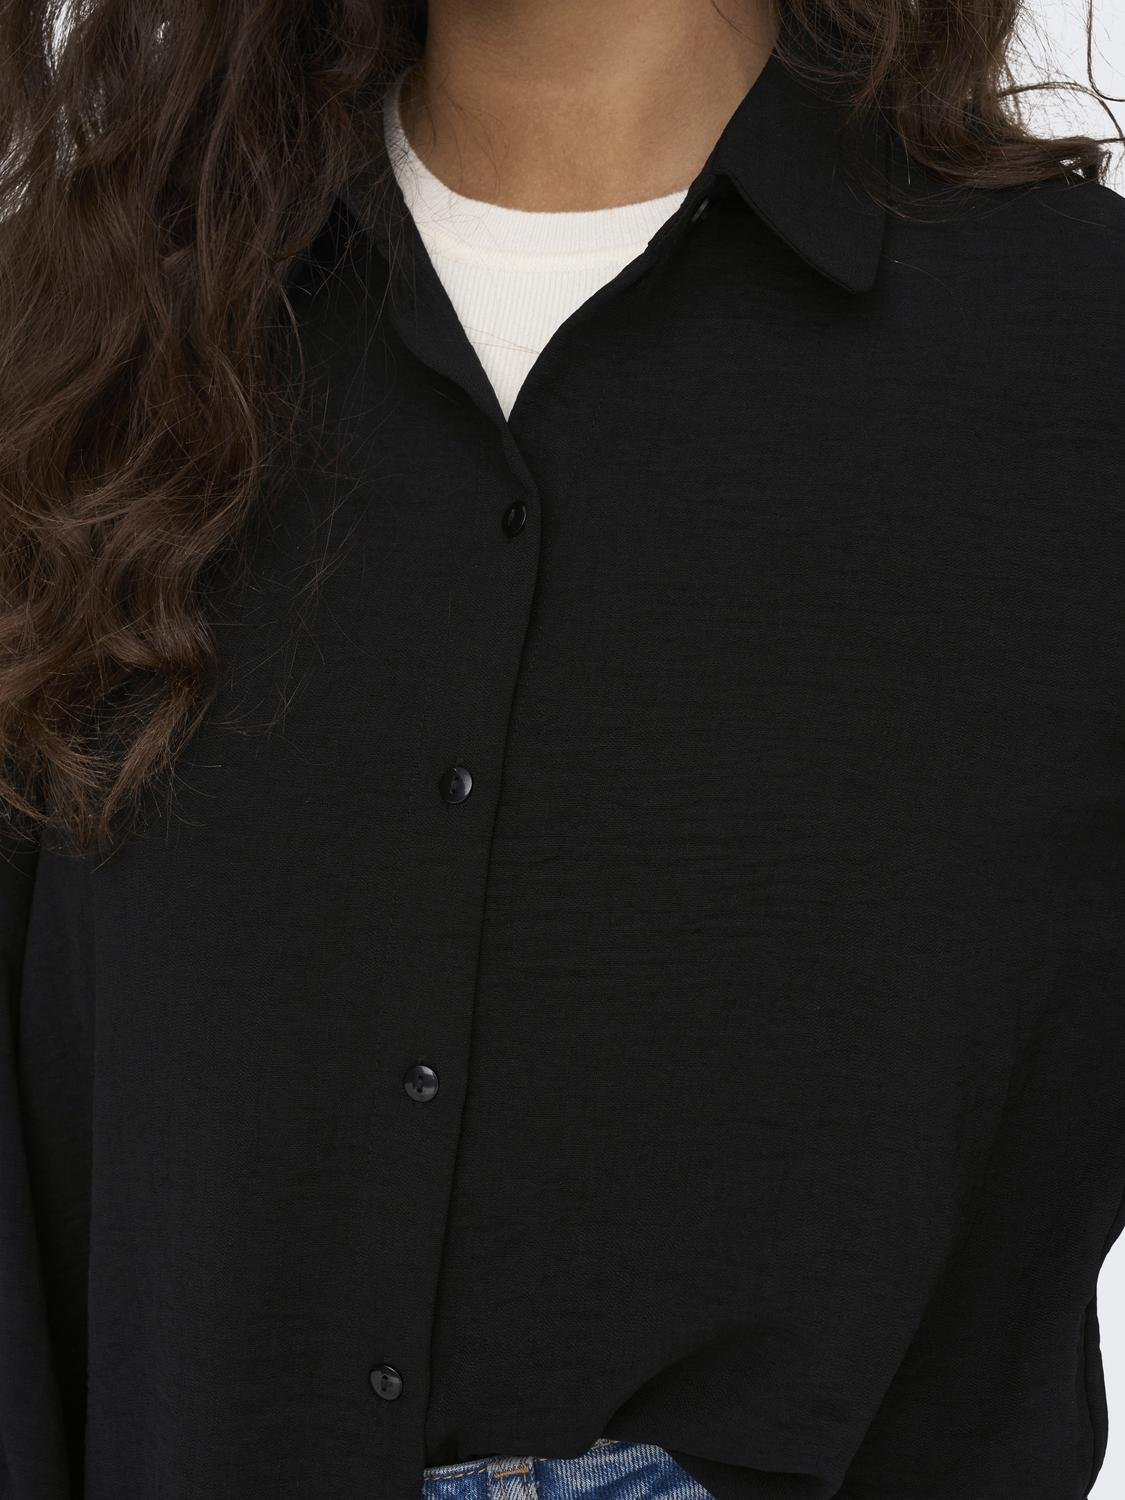 ONLY Regular Fit Shirt collar Buttoned cuffs Volume sleeves Shirt -Black - 15283183